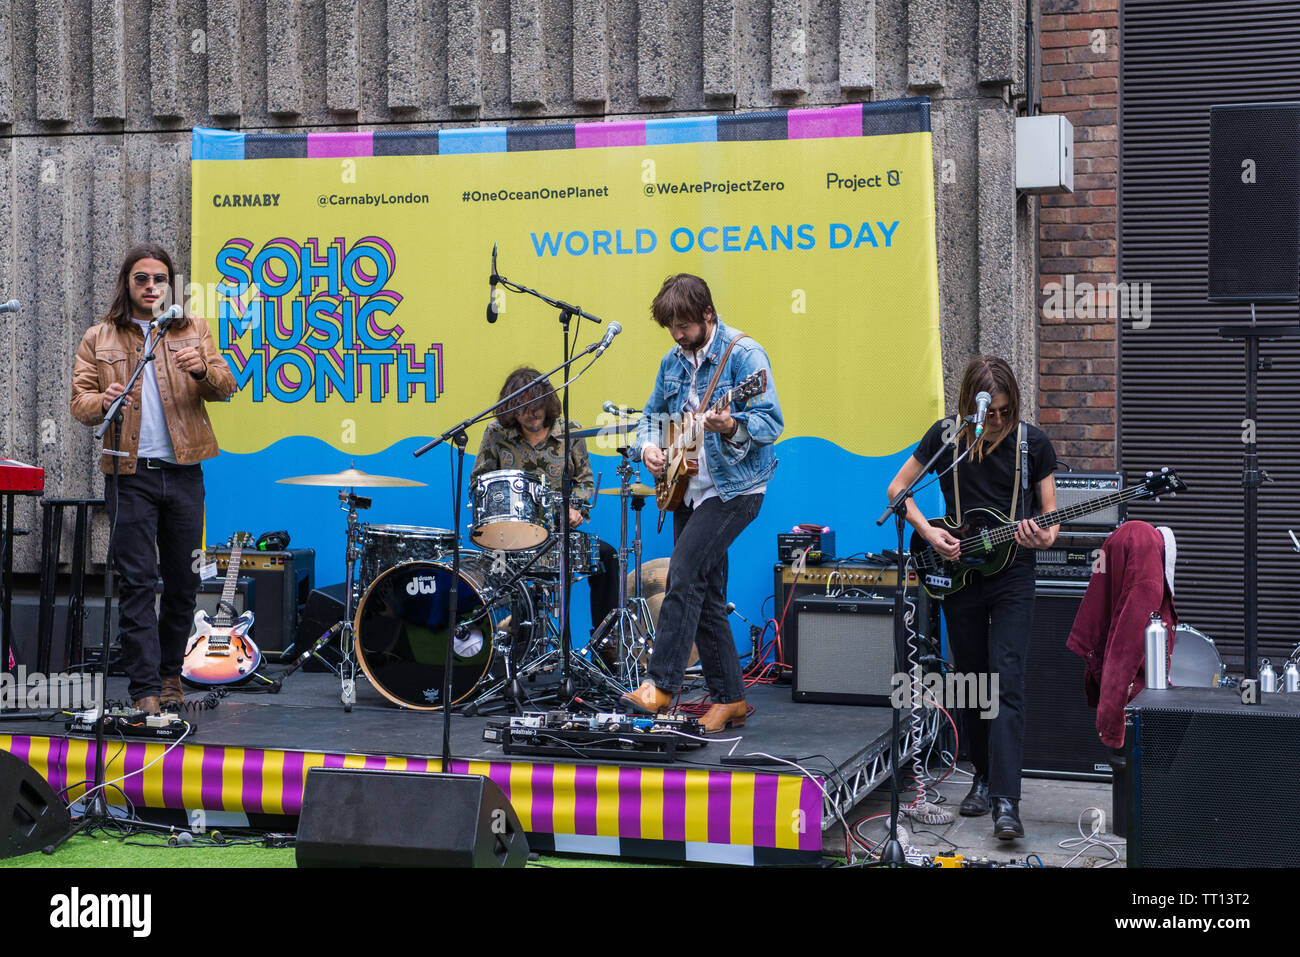 Le groupe de rock indépendant californien Vista Kicks donne des performances en plein air lors du Soho Music Month Worlds Oceans Day, Londres, Royaume-Uni Banque D'Images